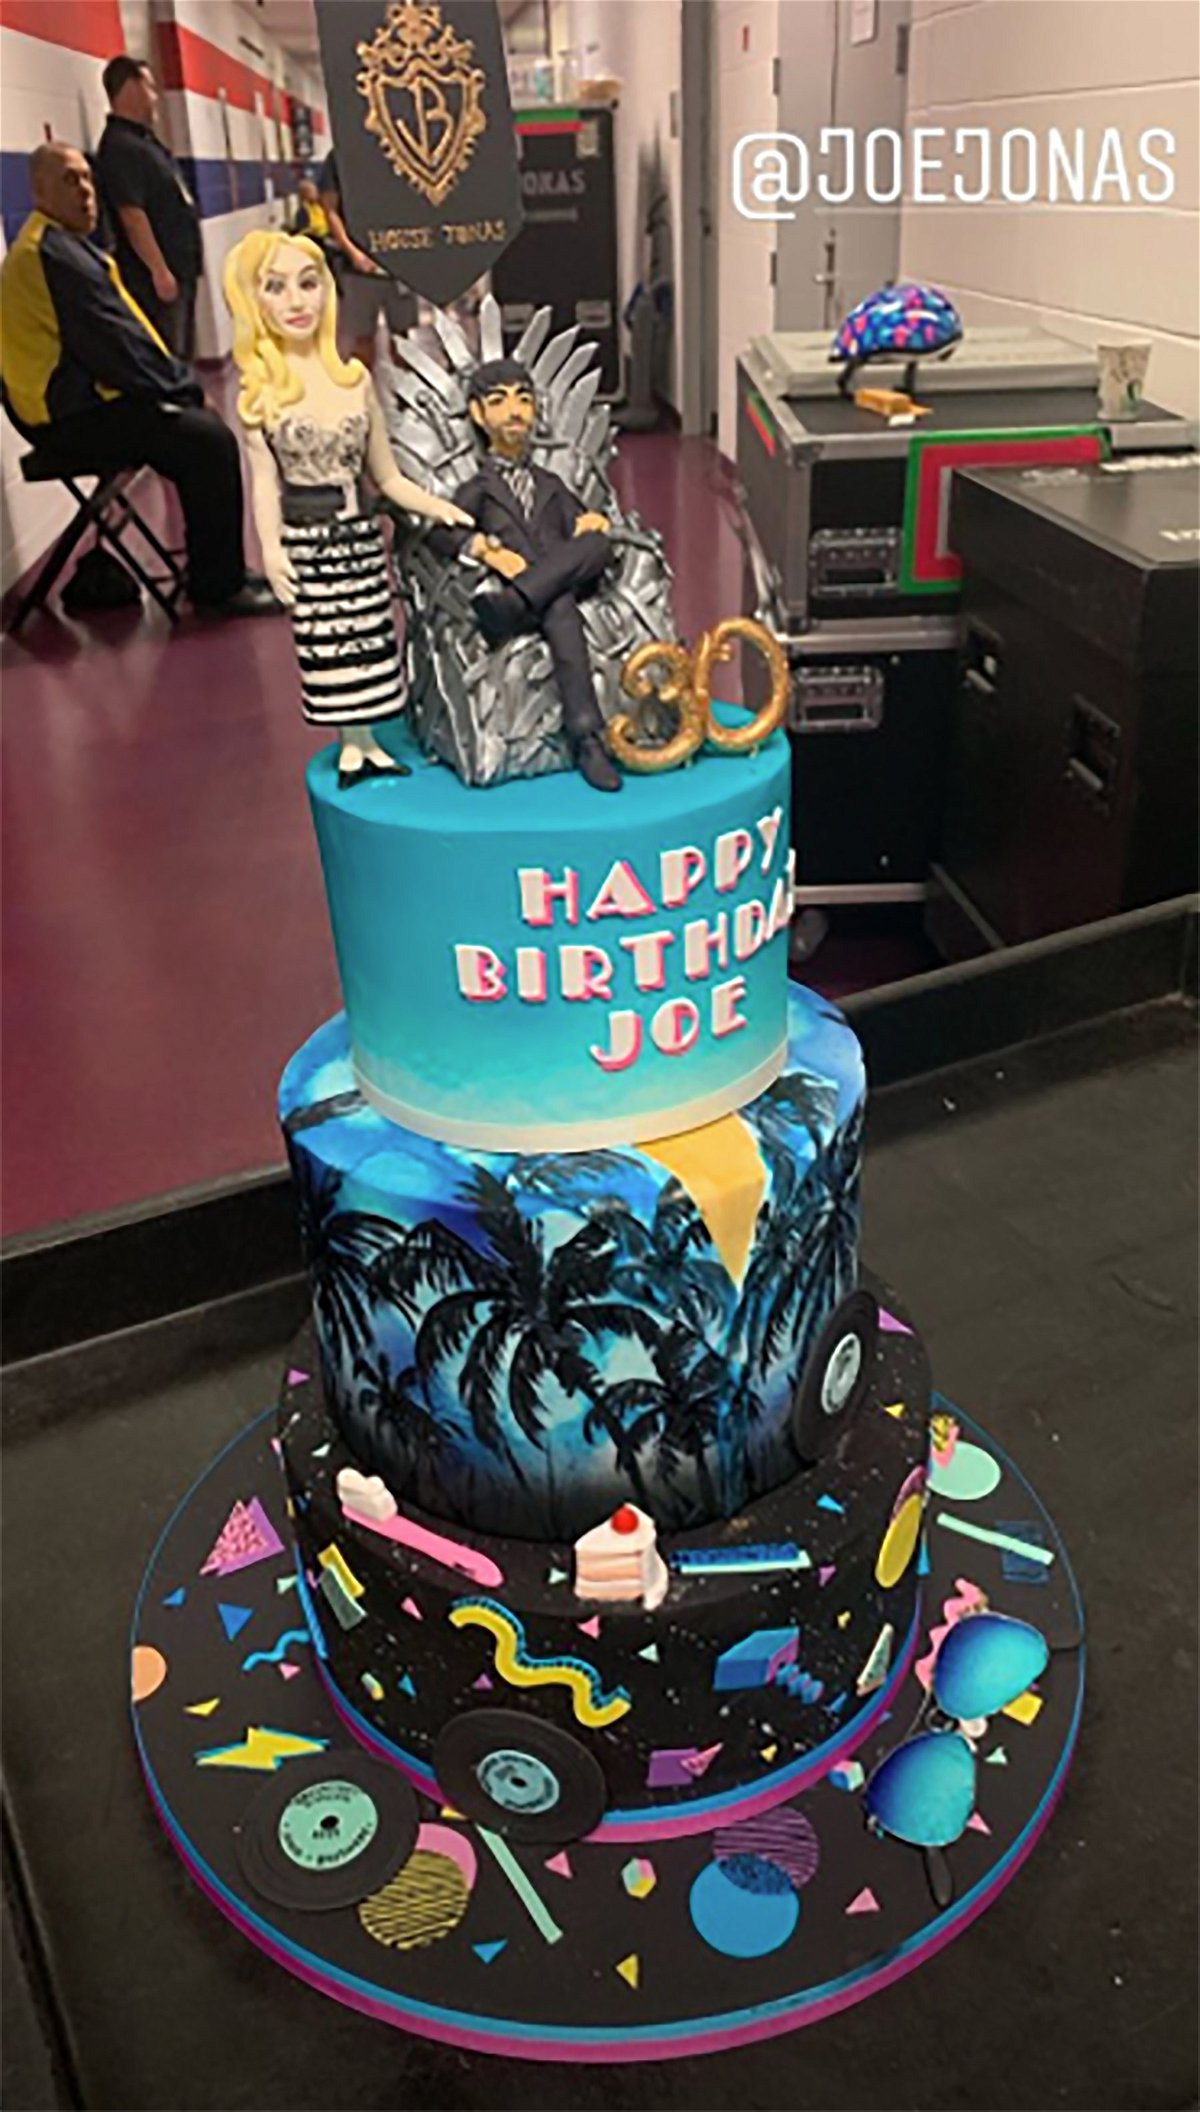 La torta per il 30esimo compleanno di Joe Jonas